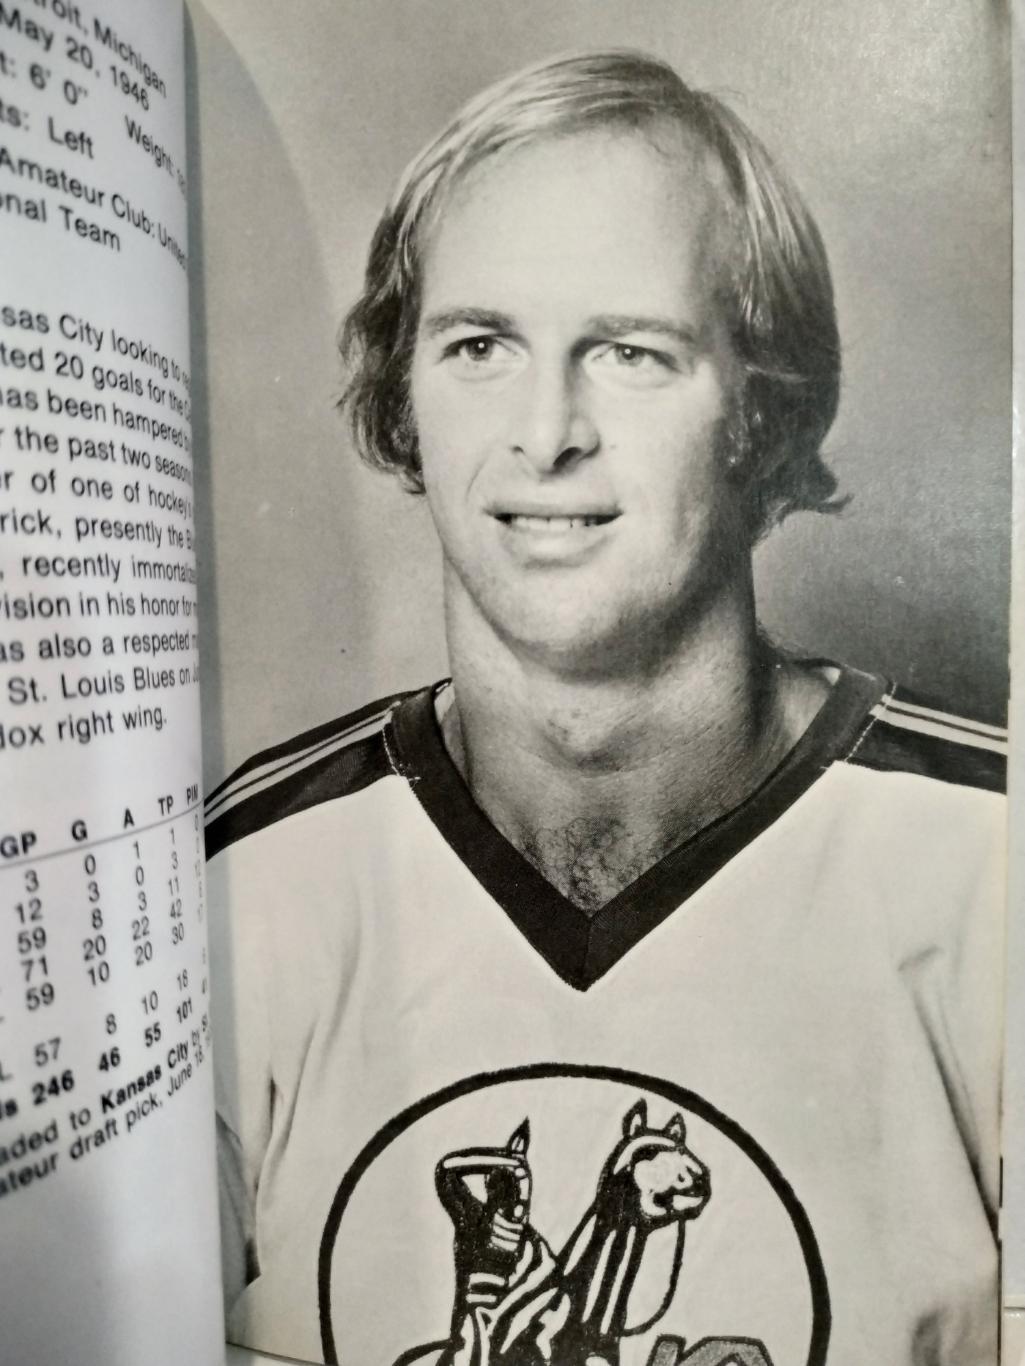 ХОККЕЙ СПРАВОЧНИК ЕЖЕГОДНИК НХЛ КАНЗАС 1975-76 KANSAS CITY SCOUTS MEDIA GUIDE 2